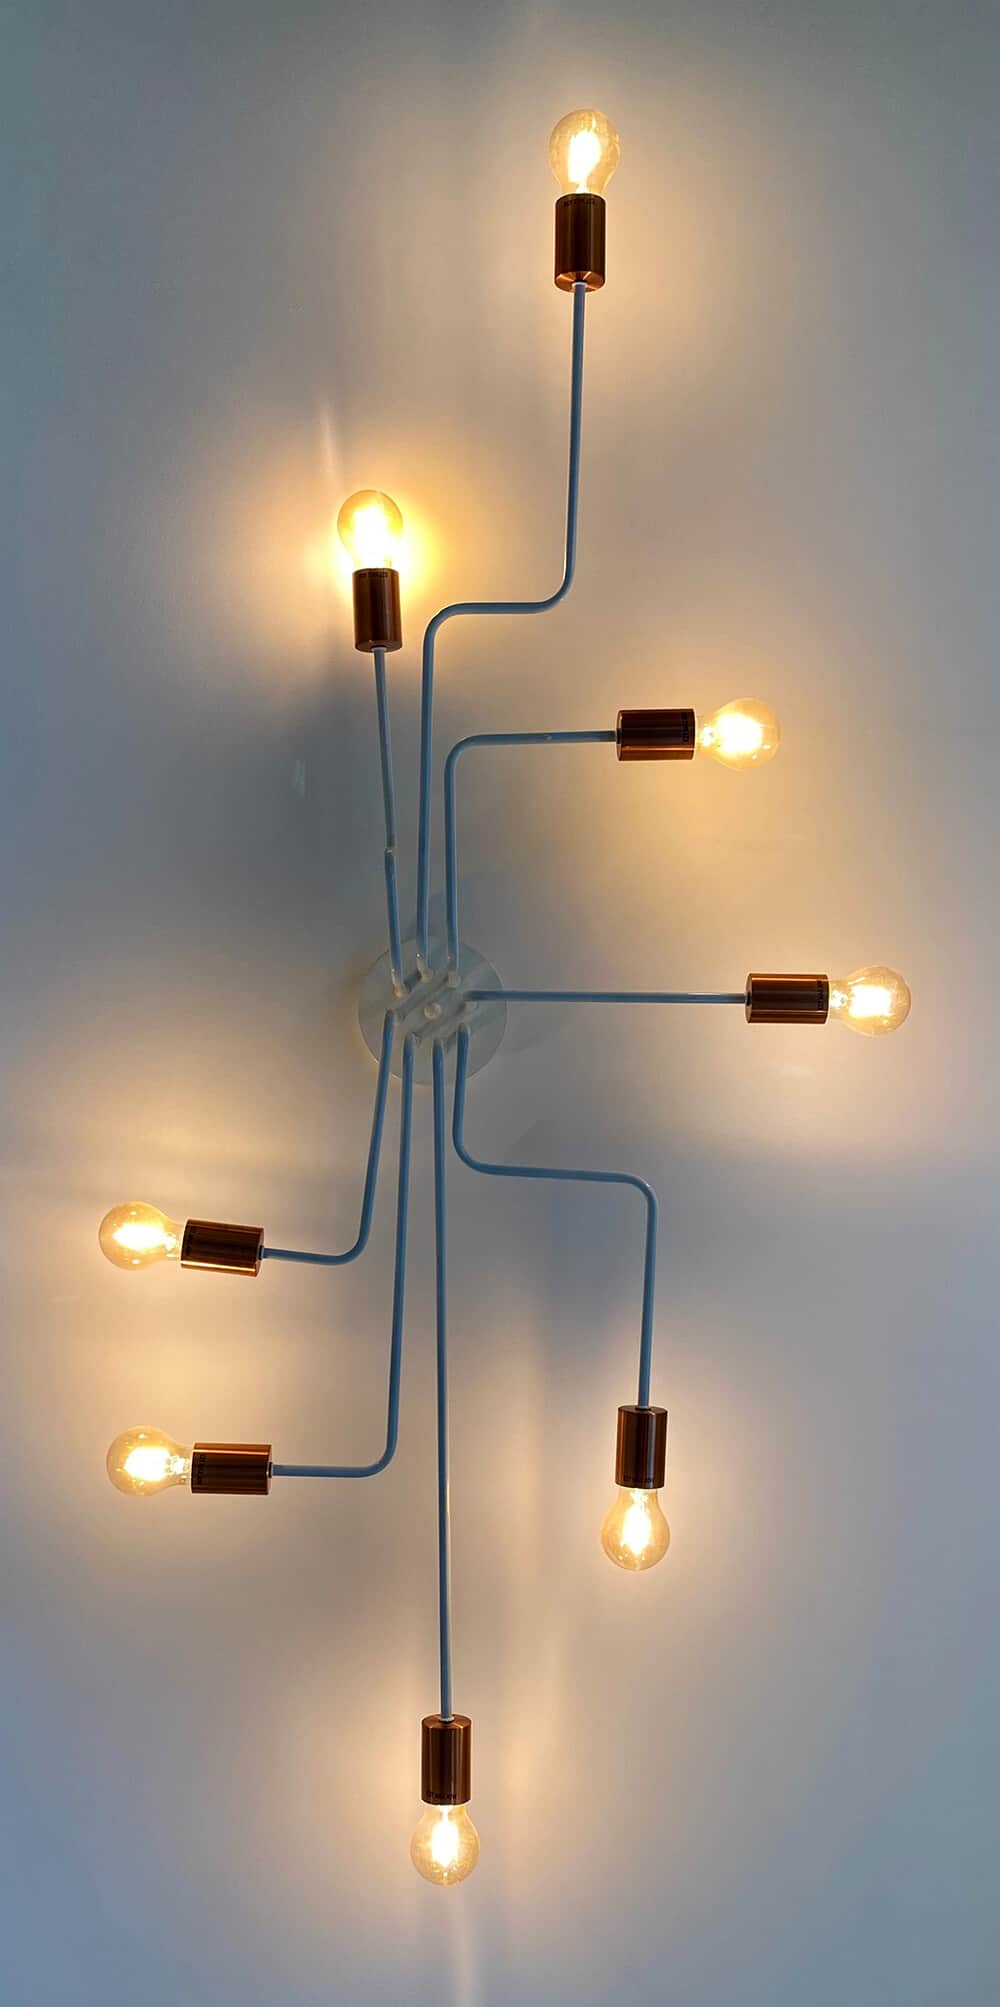 connected lightbulbs